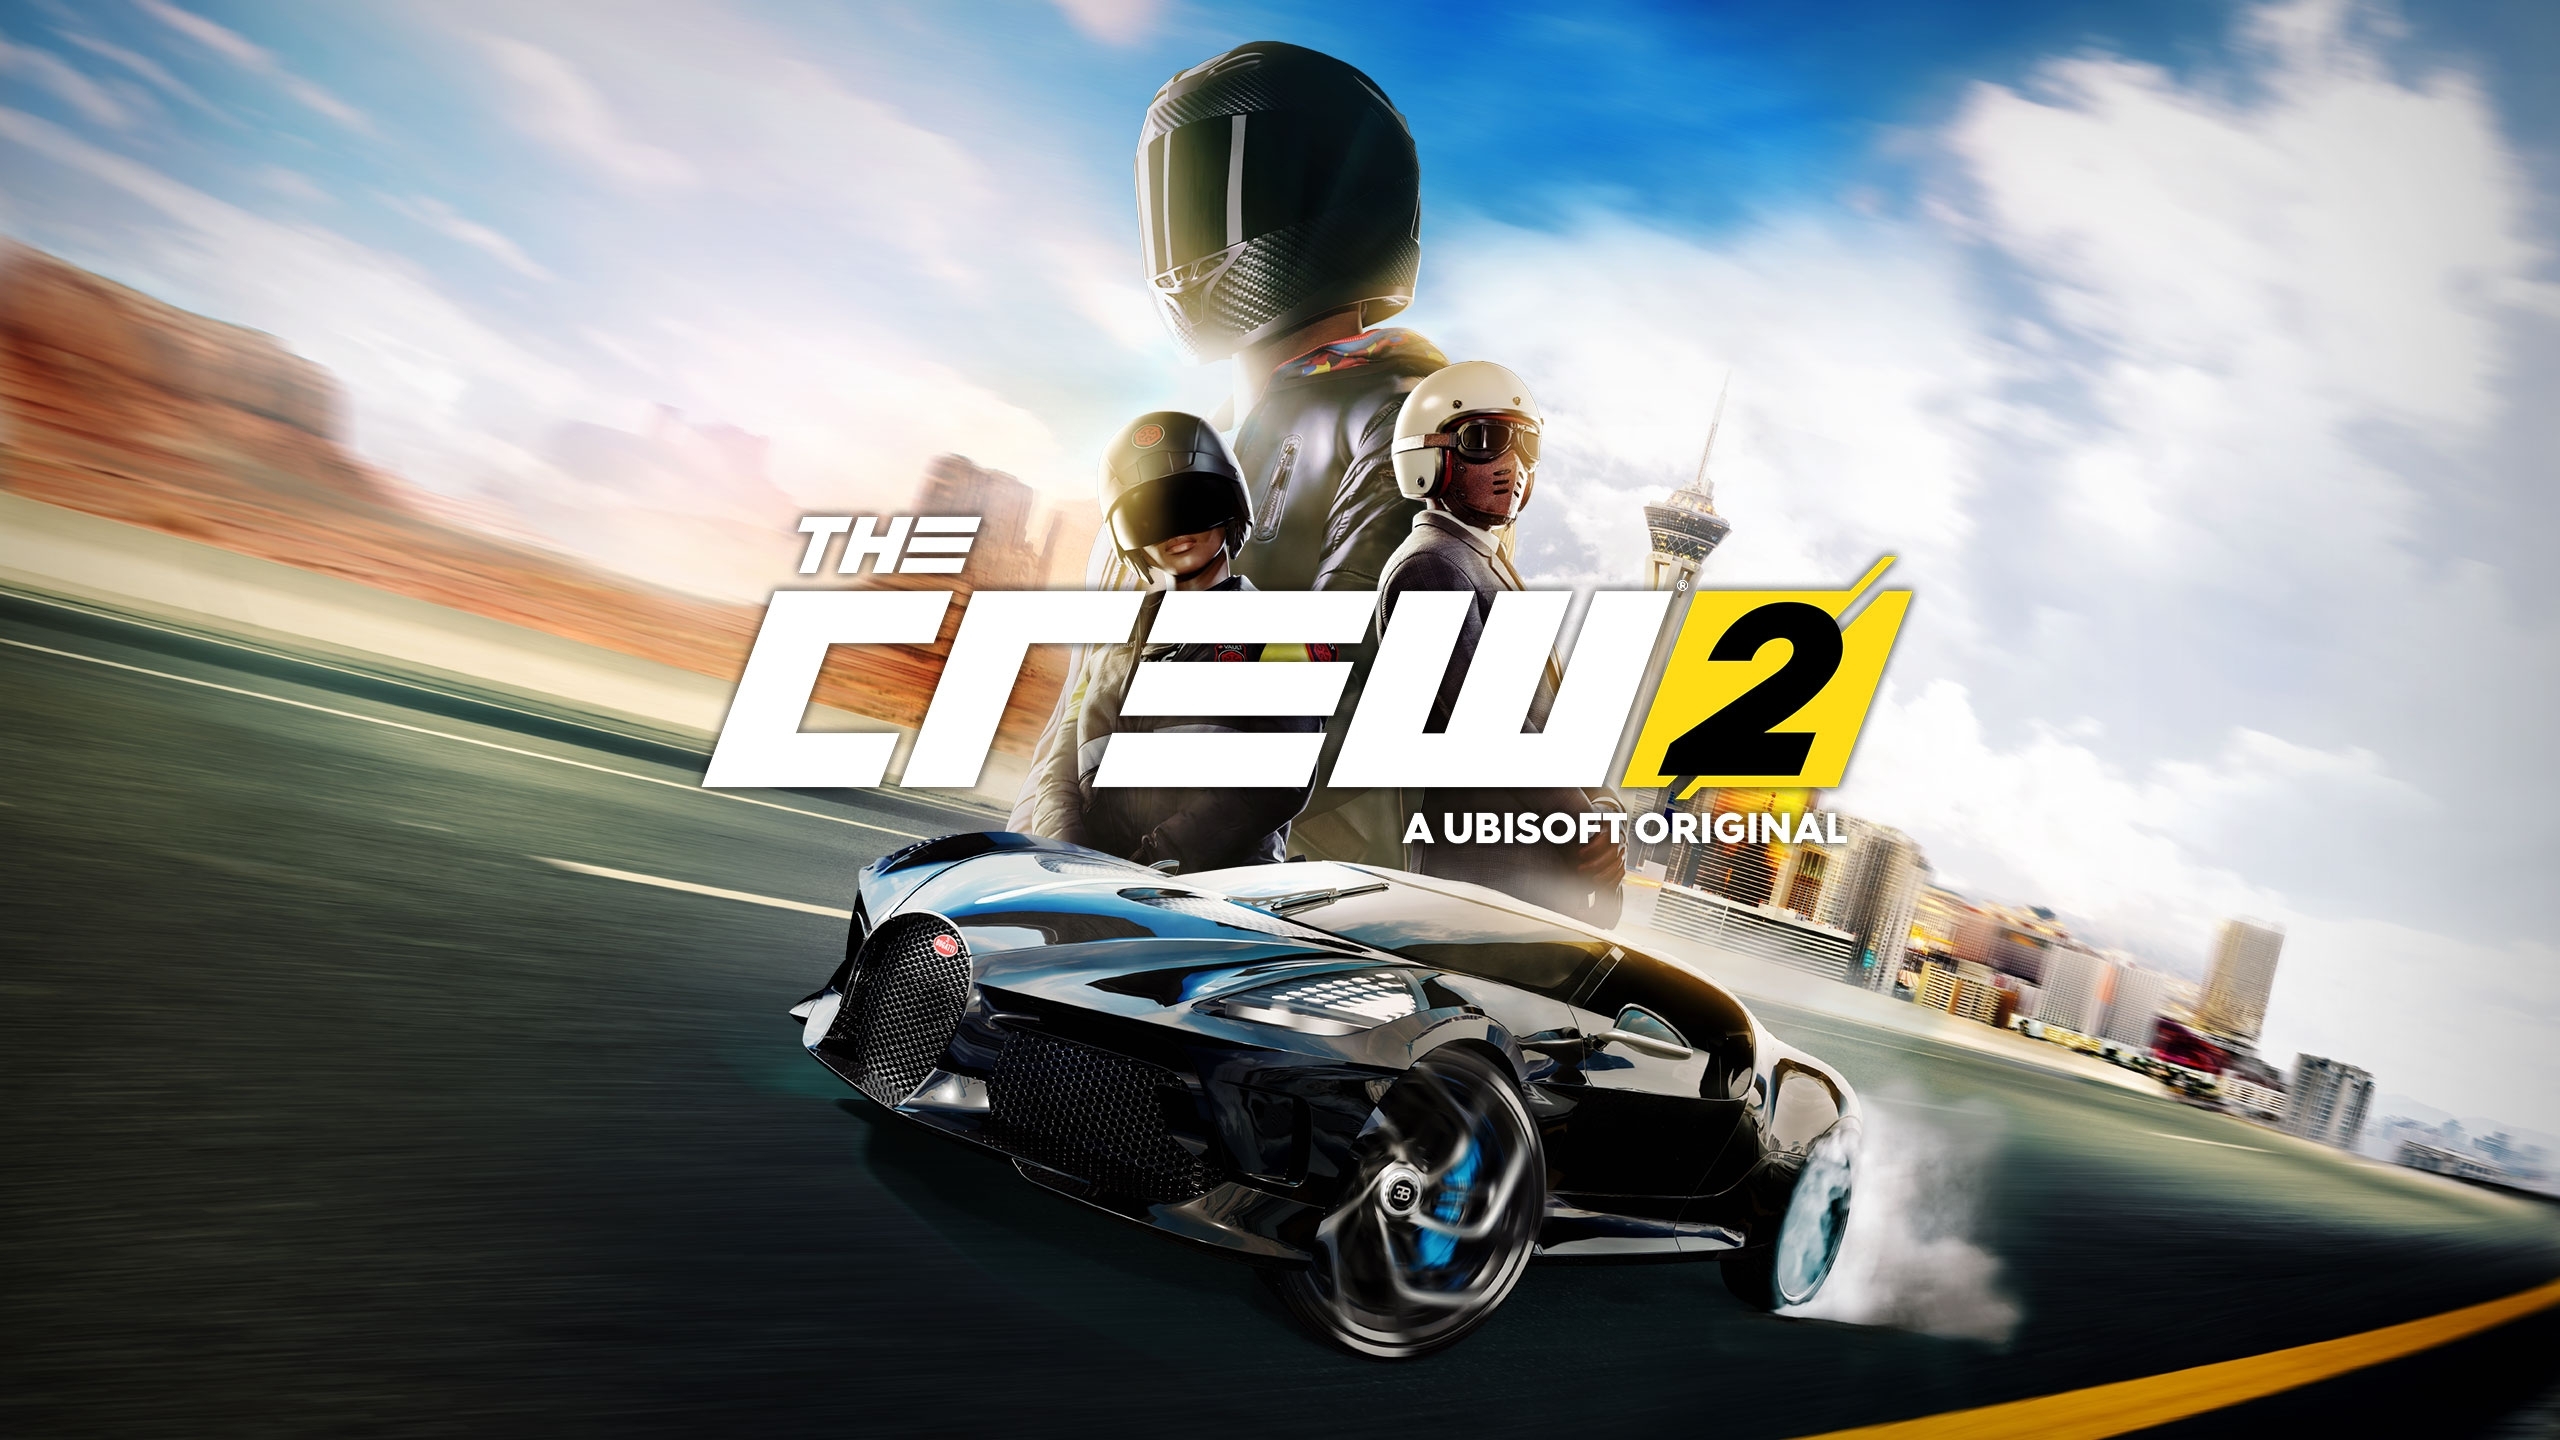 The Crew: versão para Xbox 360 terá número limitado de jogadores